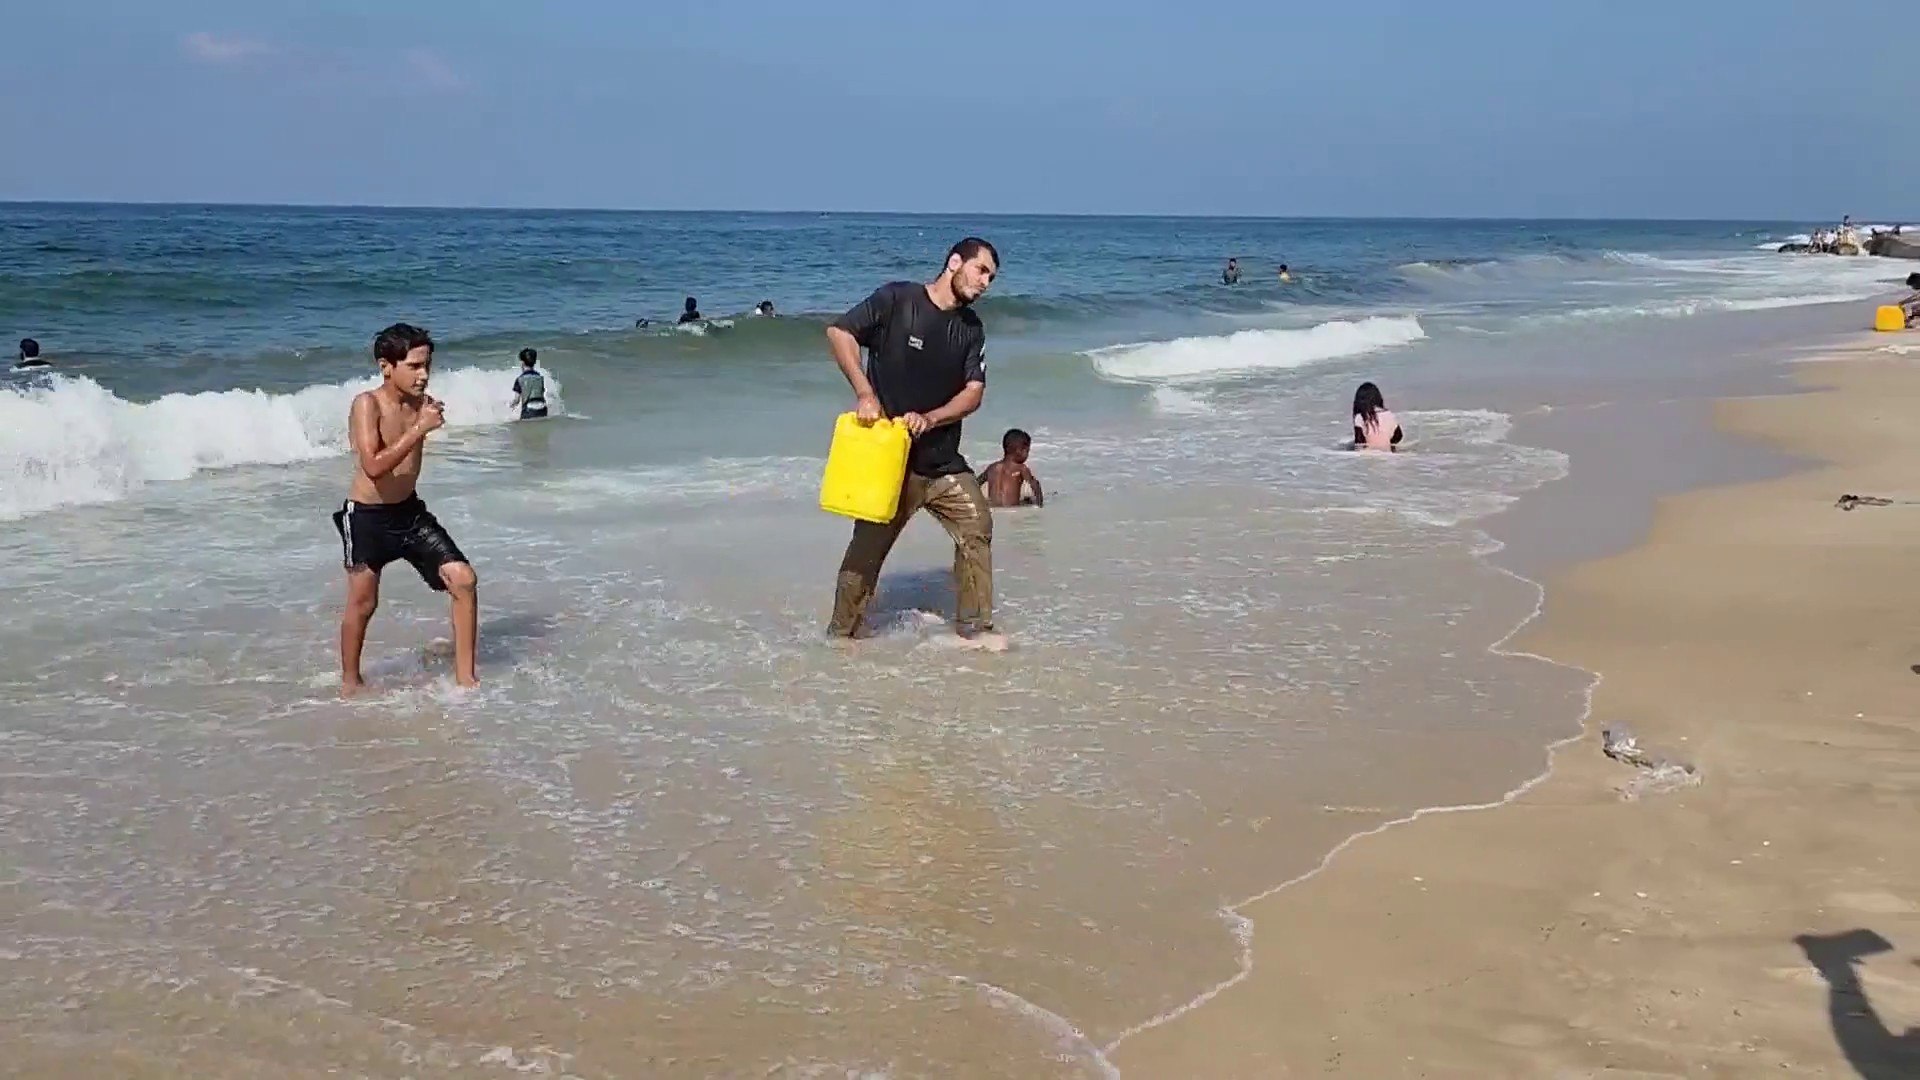 البحر يخفف جزءا من مأساة سكان غزة - فيديو Dailymotion